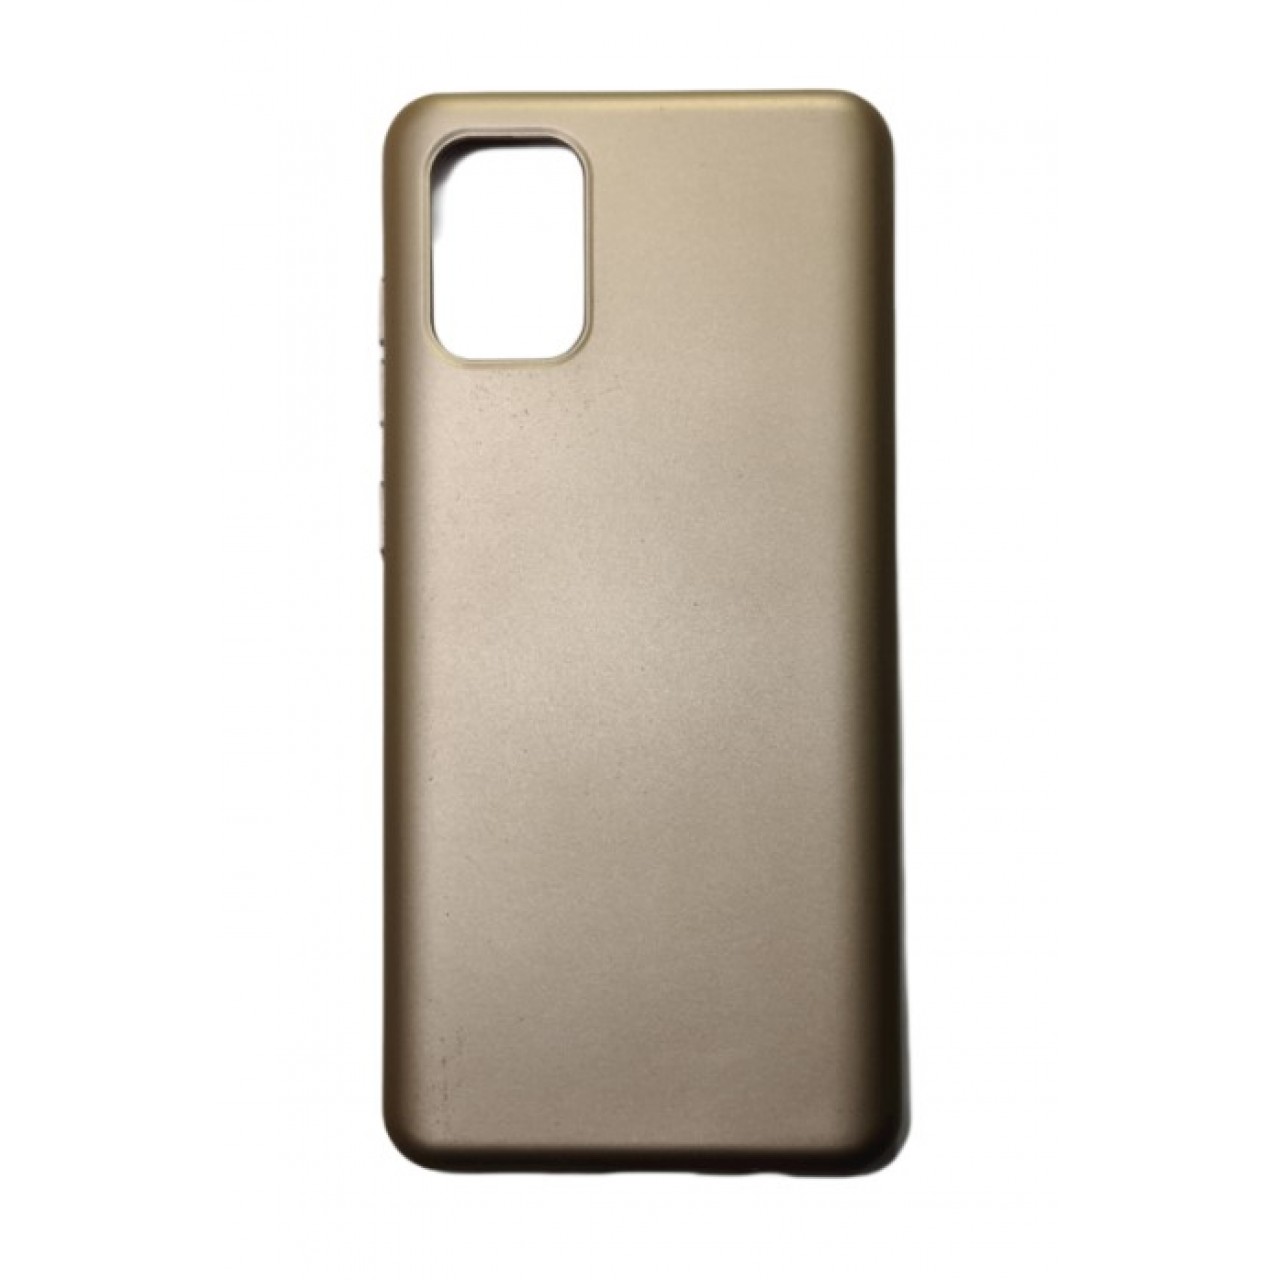 Θήκη Samsung Galaxy S20 Ultra Silicone soft-touch cover - 5140 - Χρυσό - ΟΕΜ